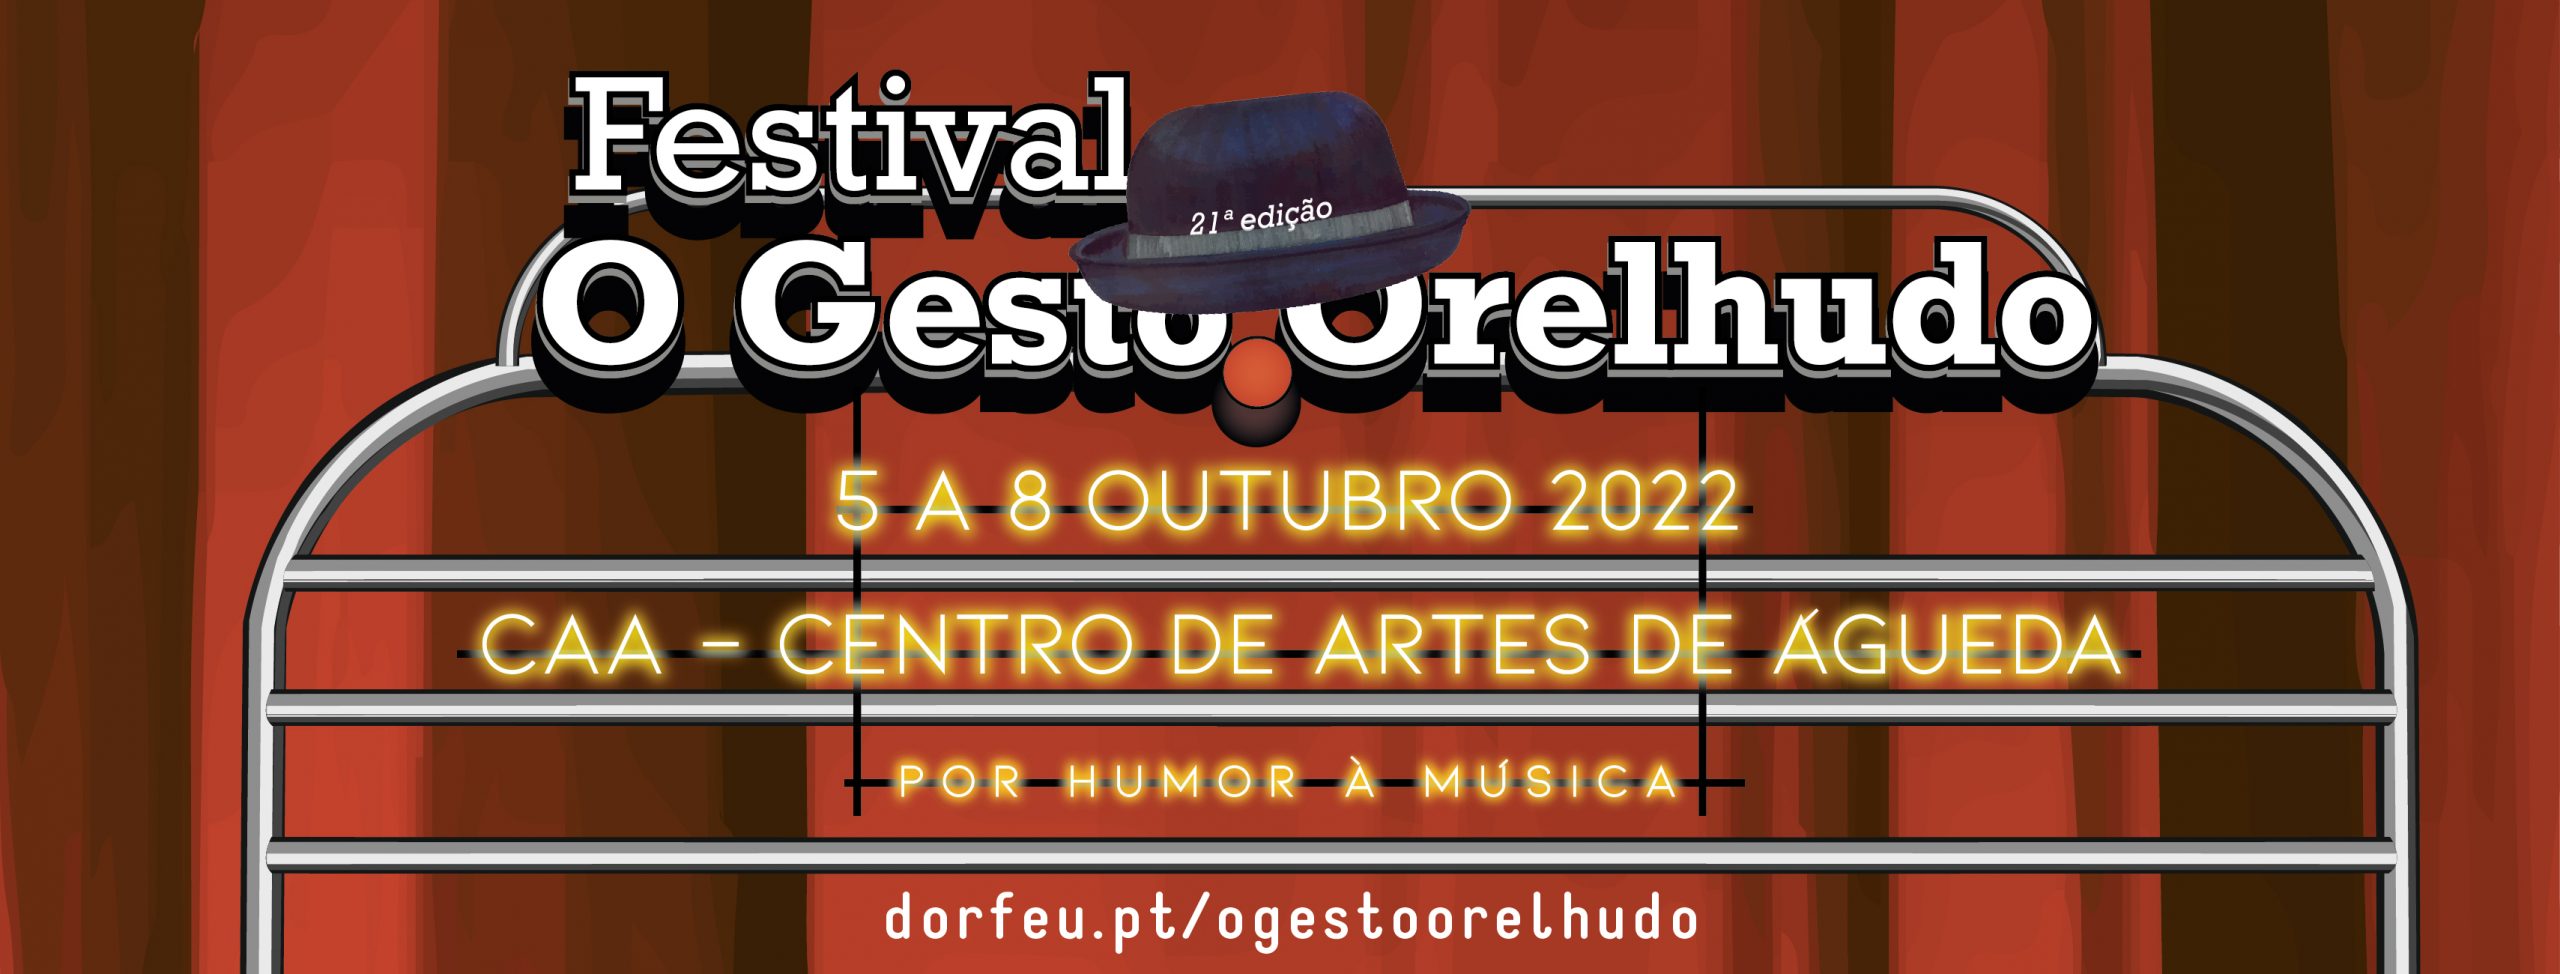 Já se pode comprar bilhetes para a 21.º edição do Festival O Gesto Orelhudo em Águeda